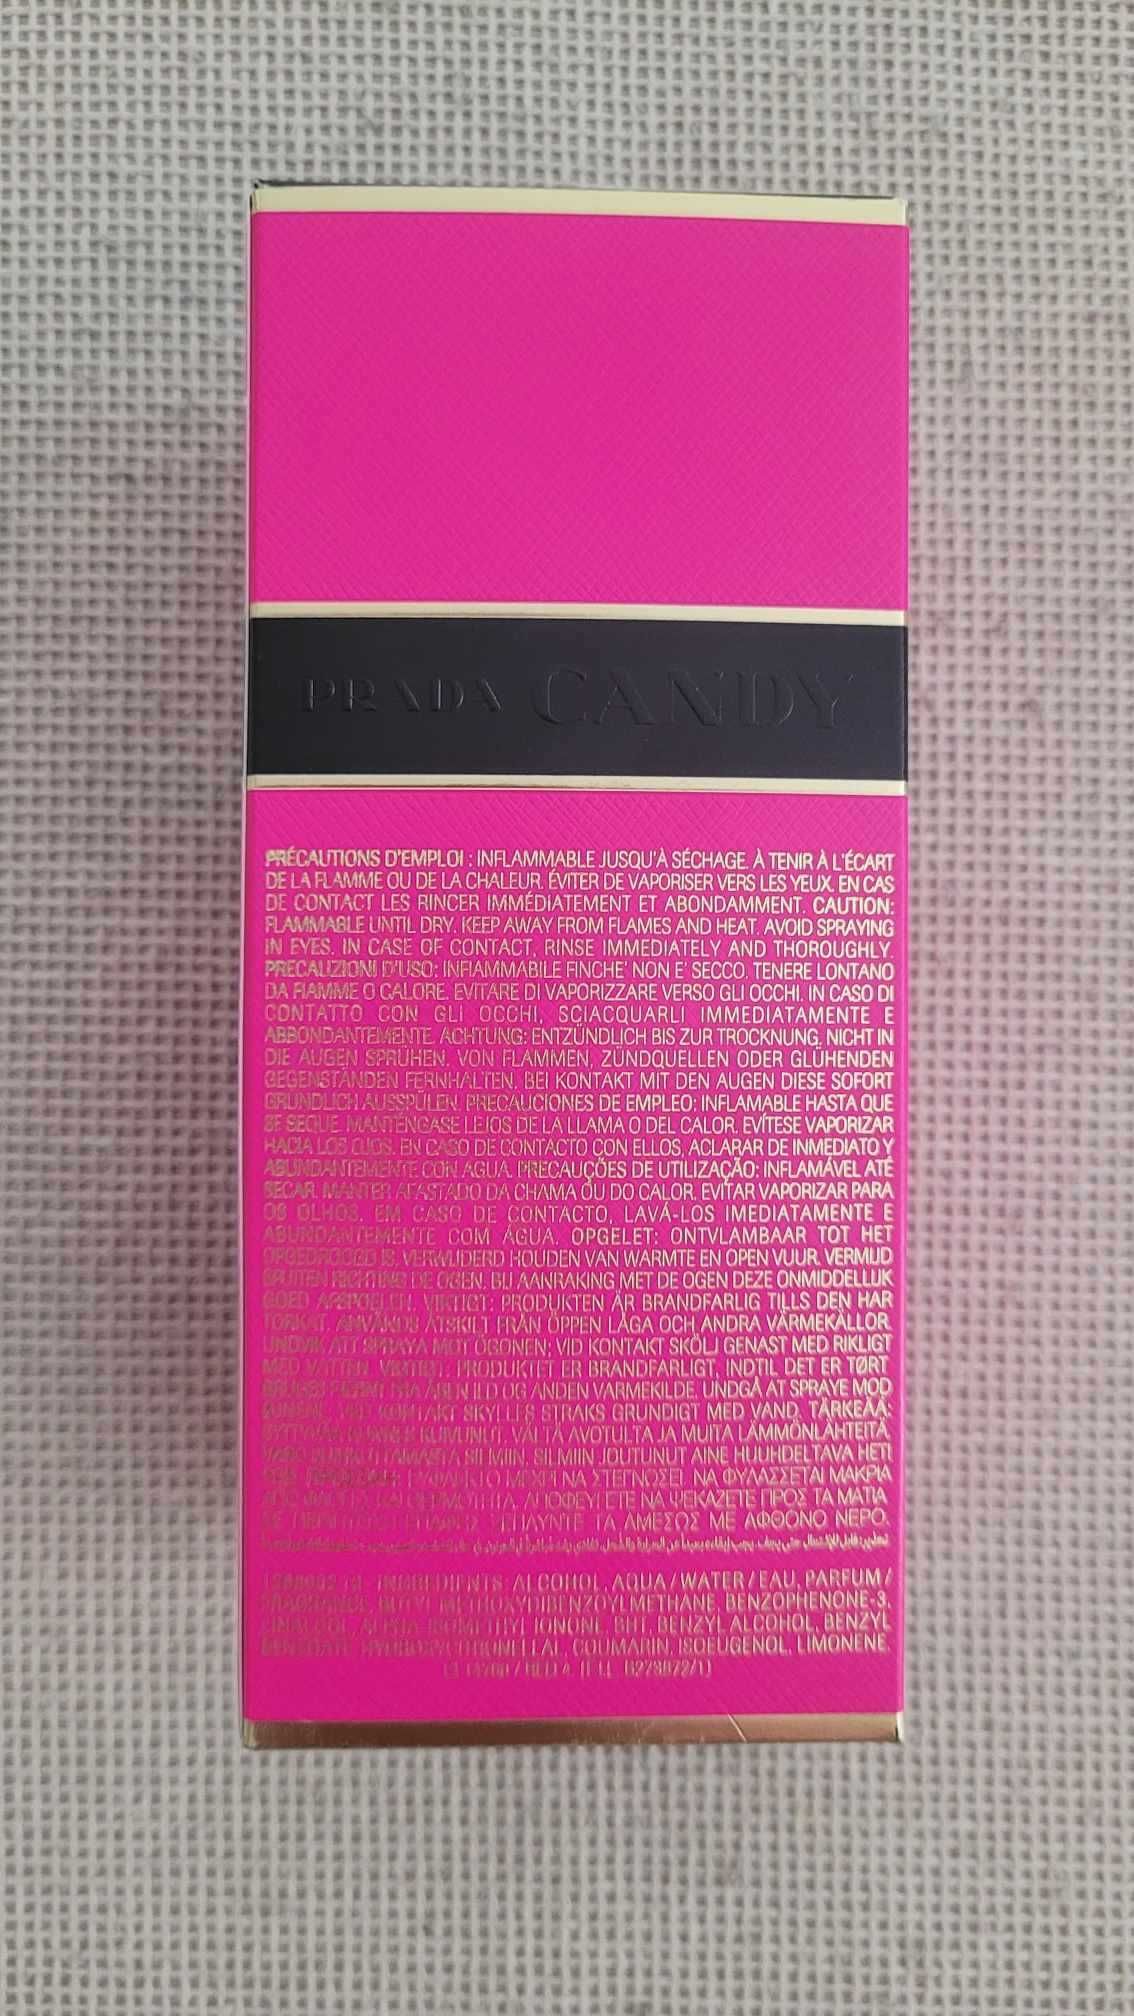 Parfum Original Prada Candy